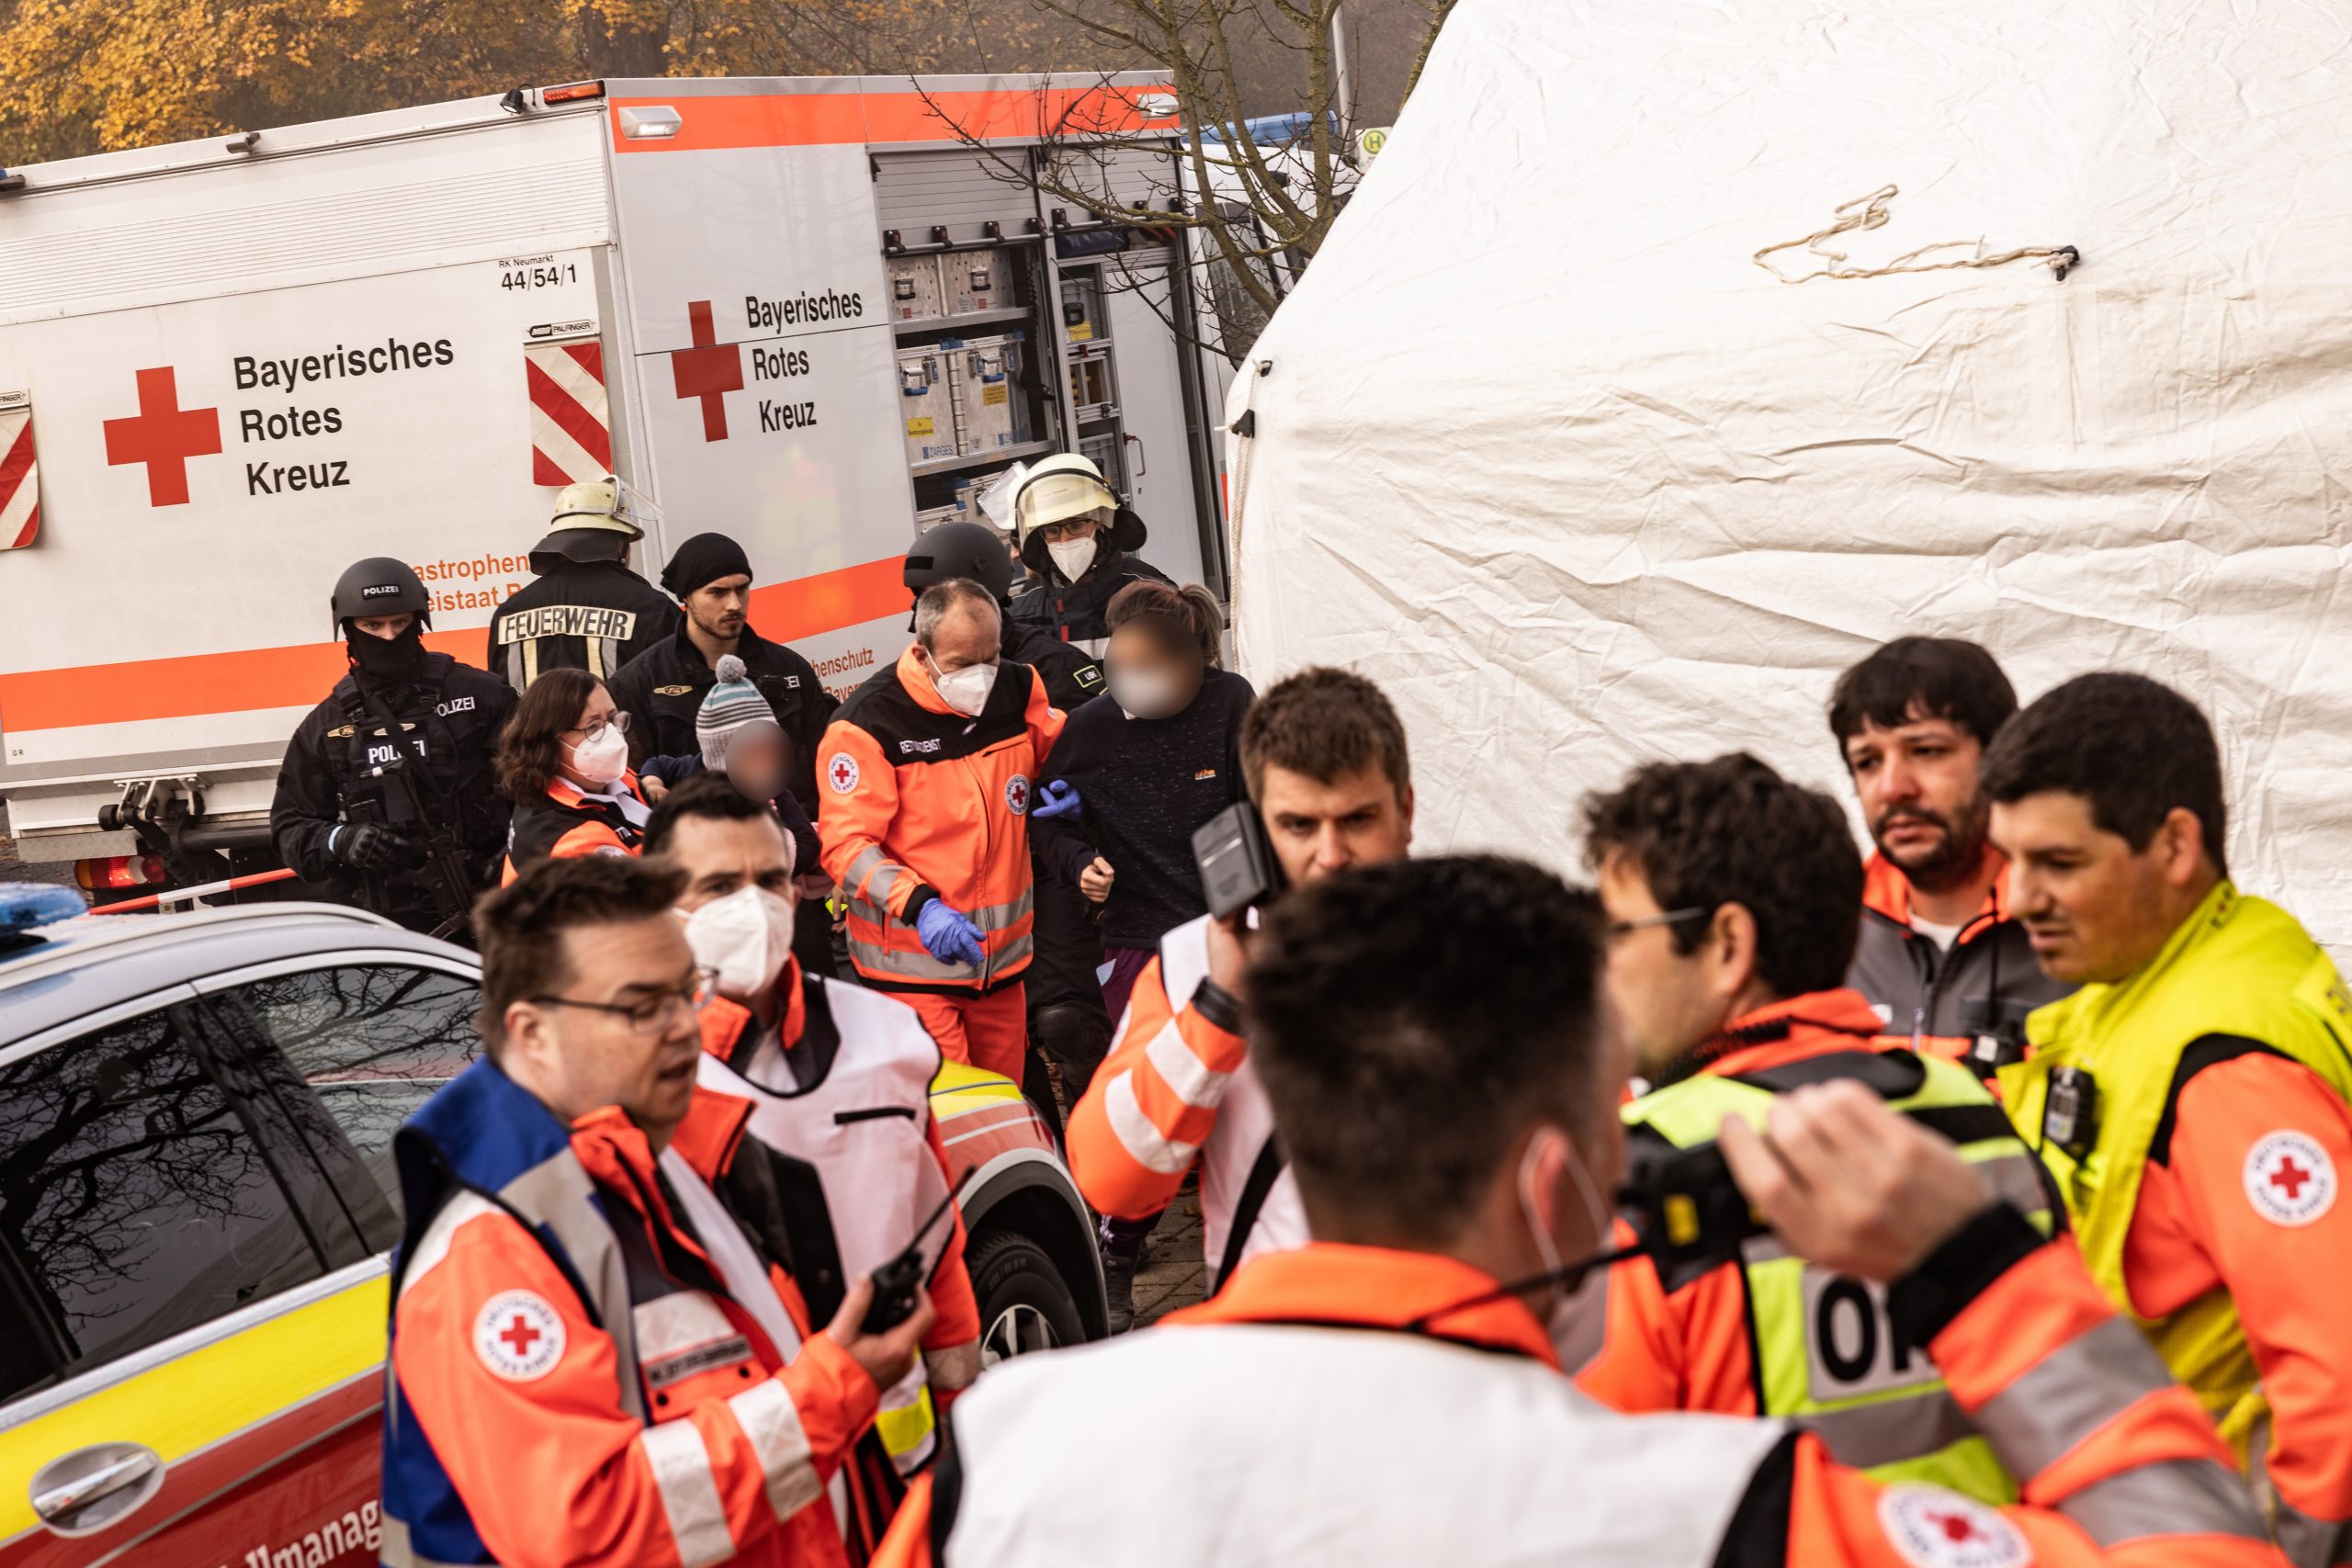 Zahlreiche Rettungskräfte versorgten die schockierten Reisenden am Bahnhof Seubersdorf.